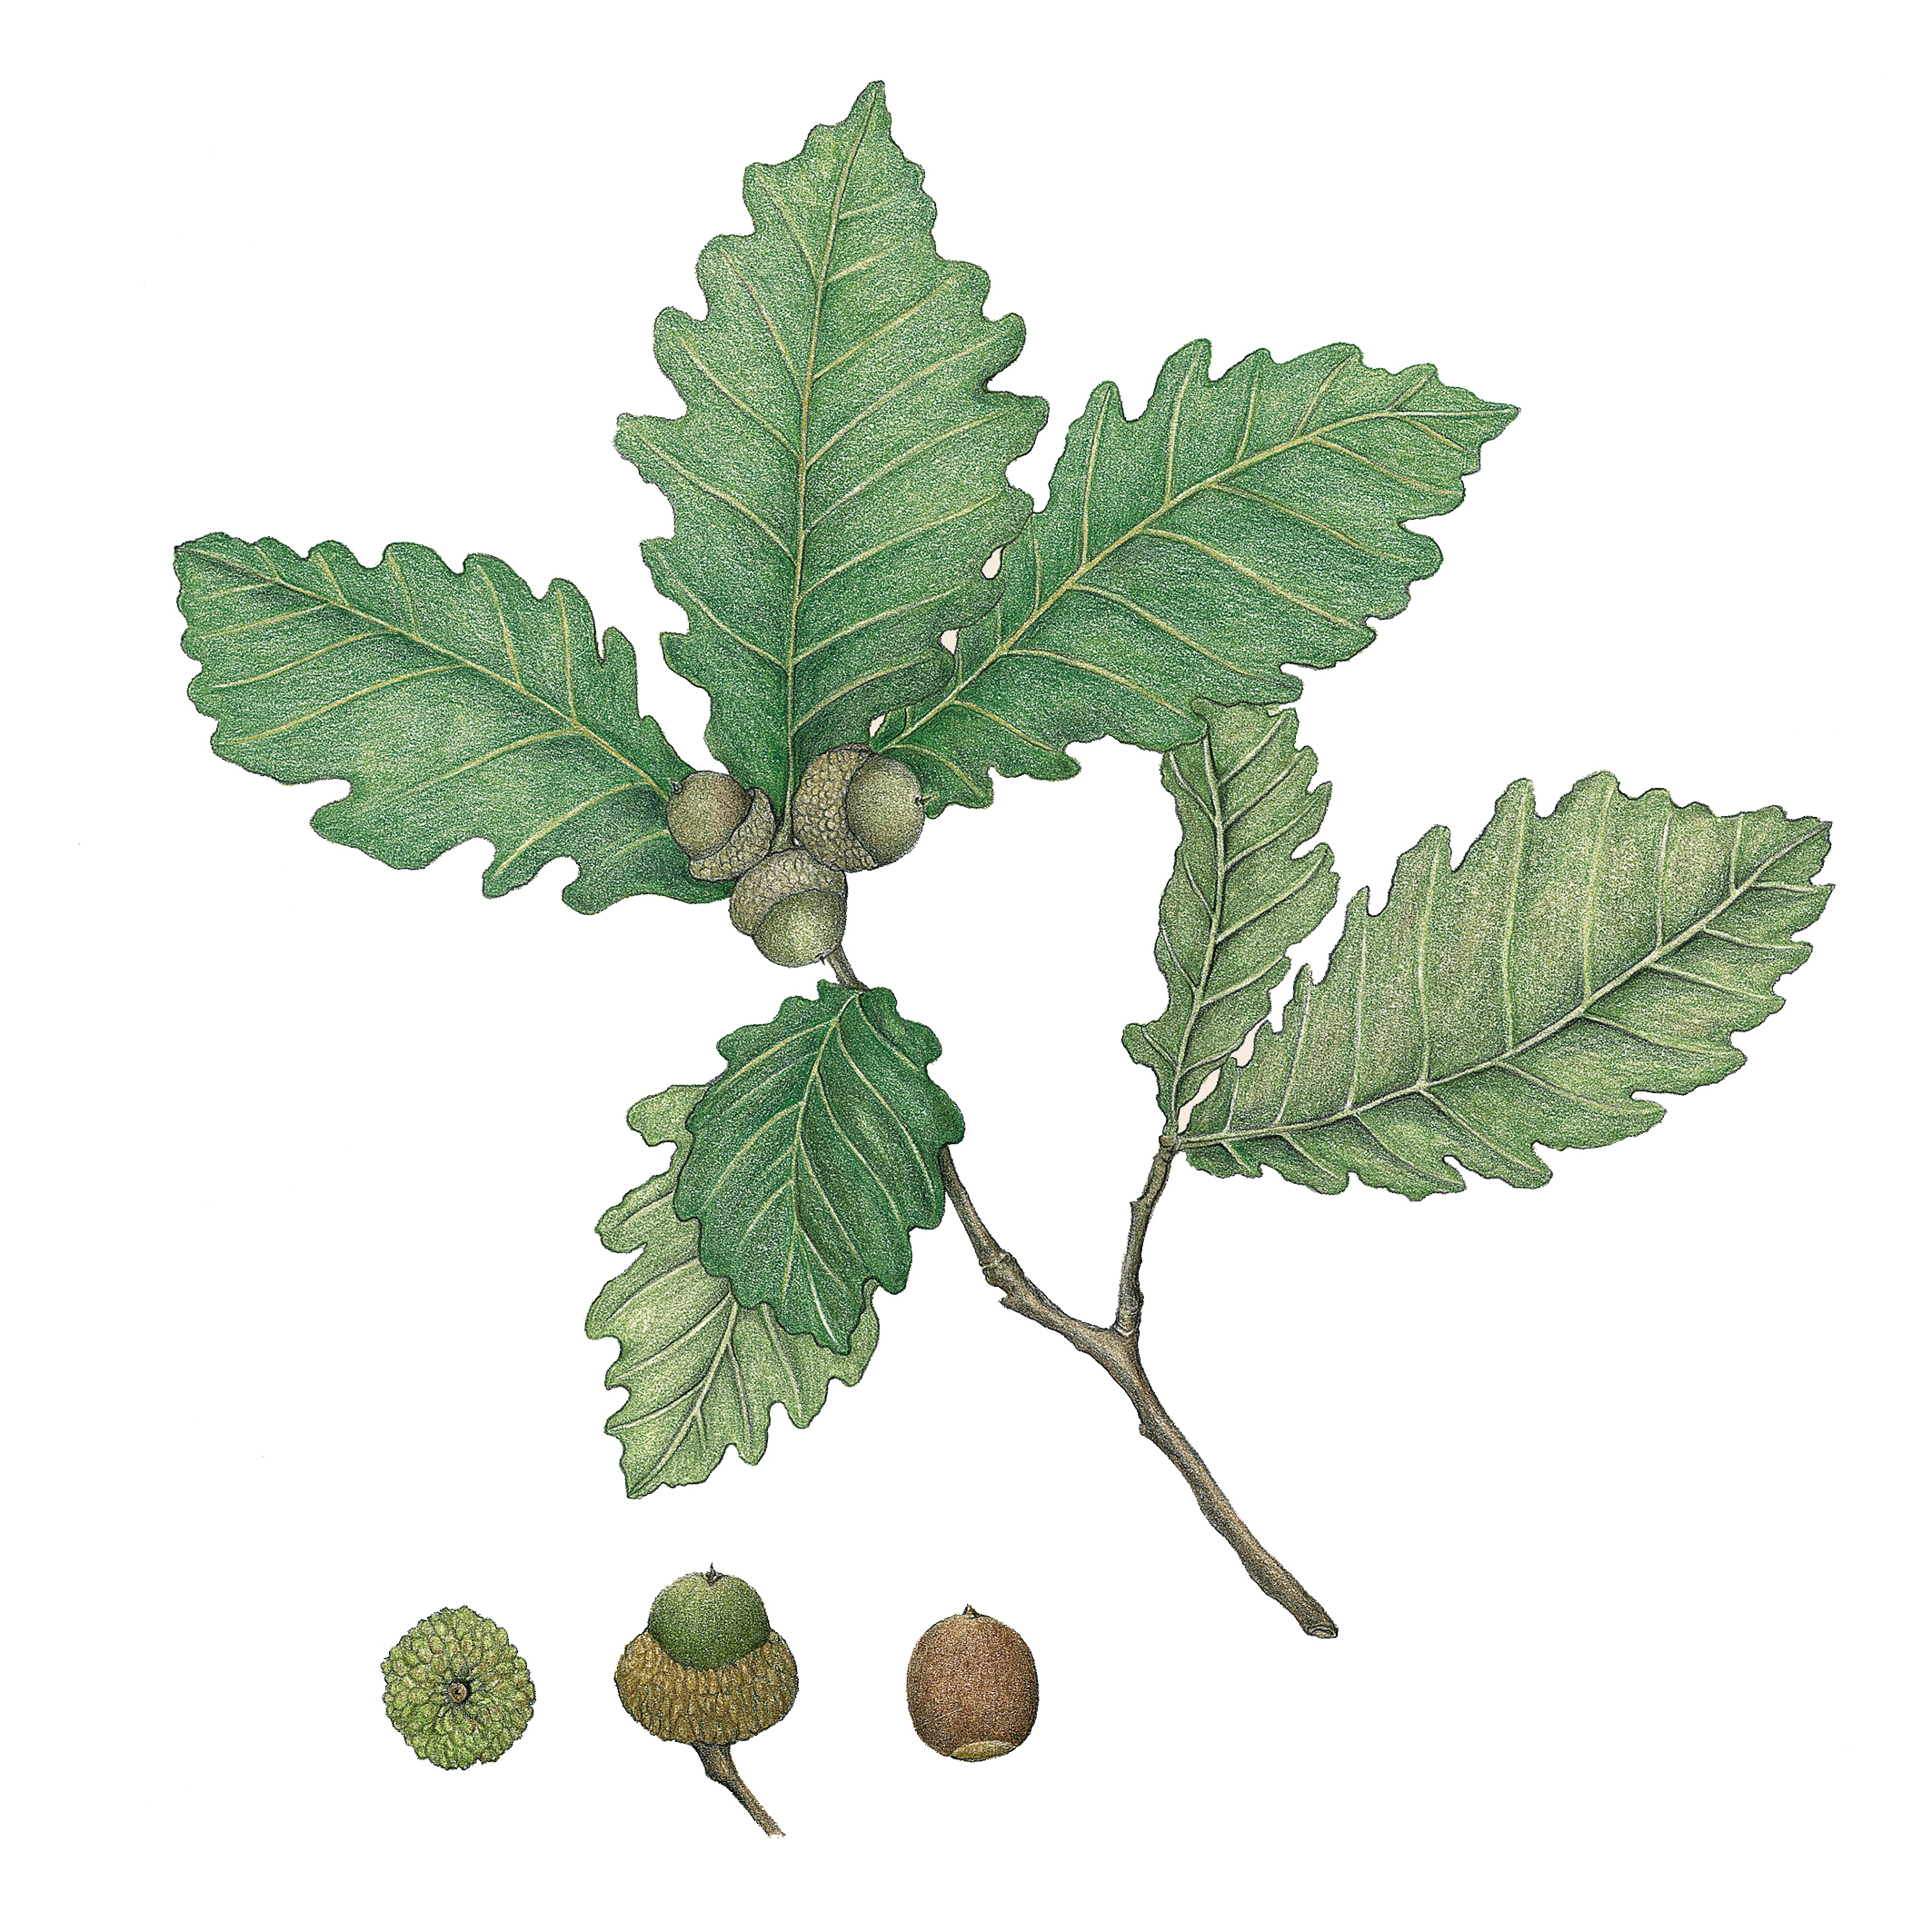 참나무속 식물의 열매인 도토리는 대표적인 견과다. 그림은 신갈나무의 열매.